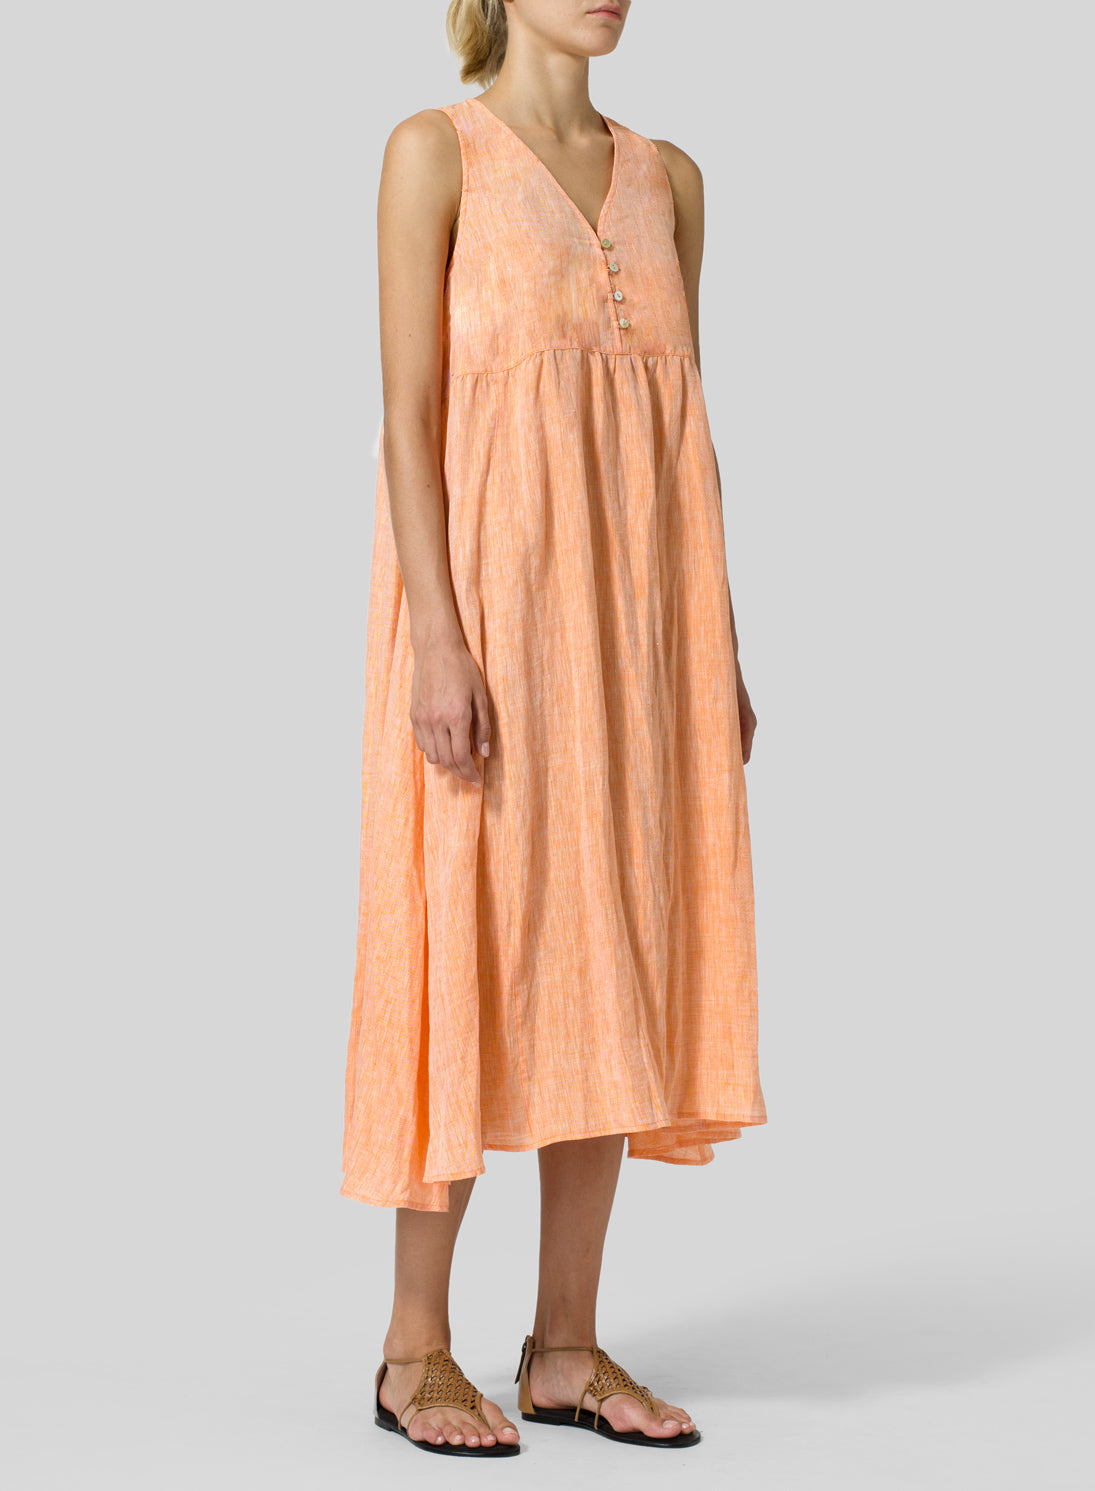 Cotton Linen Sleeveless A-Line Dress - boddysize